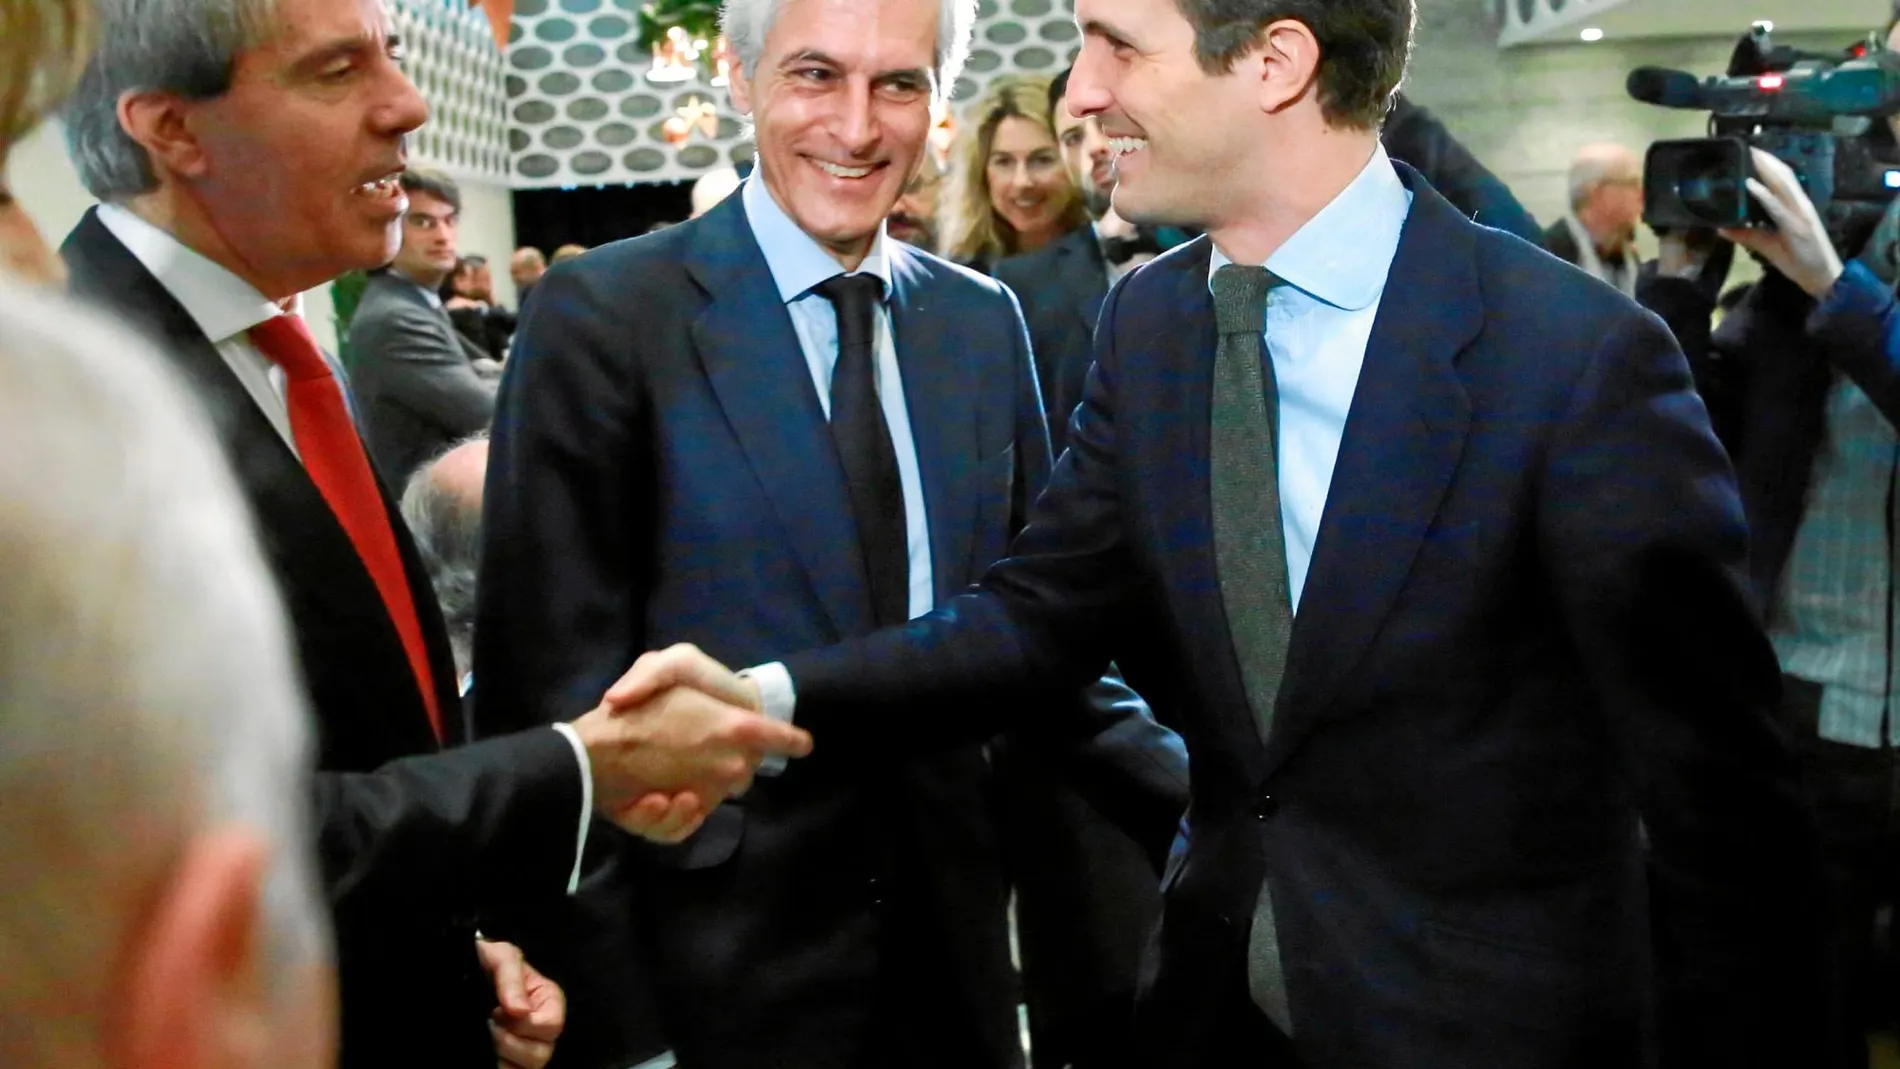 Adolfo Suárez Illana, en la imagen, junto a Pablo Casado y Ángel Garrido, es uno de los nombres que ha sonado con más fuerza como posible candidato